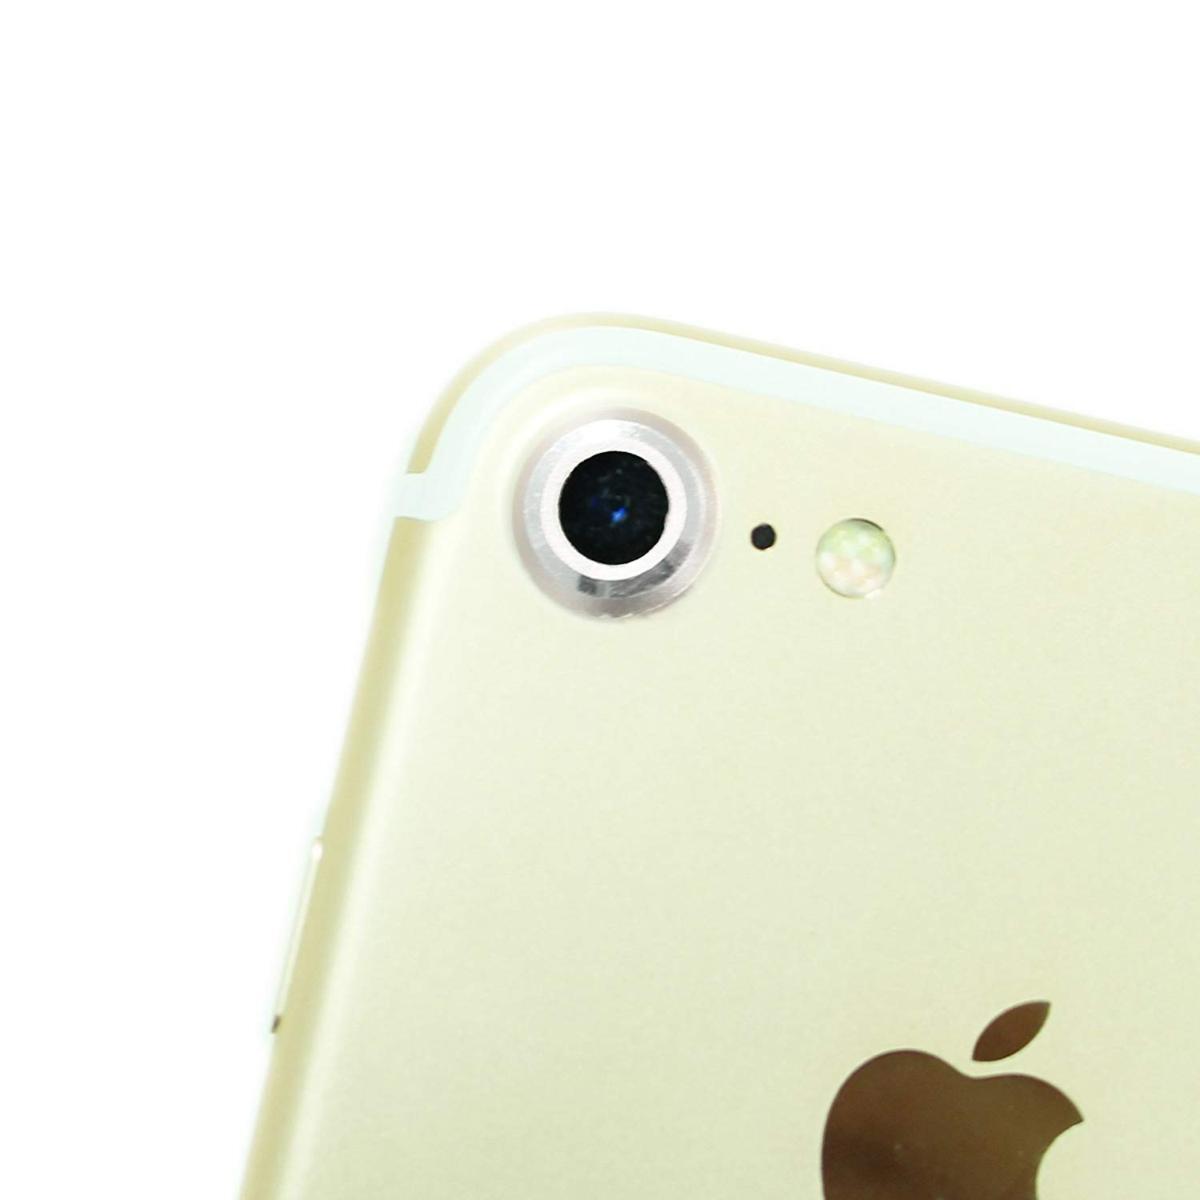 即決・送料込) iPhone SE(第2世代/2020年発売)/iPhone 8/iPhone 7 対応 背面カメラレンズカバー シルバー_画像2